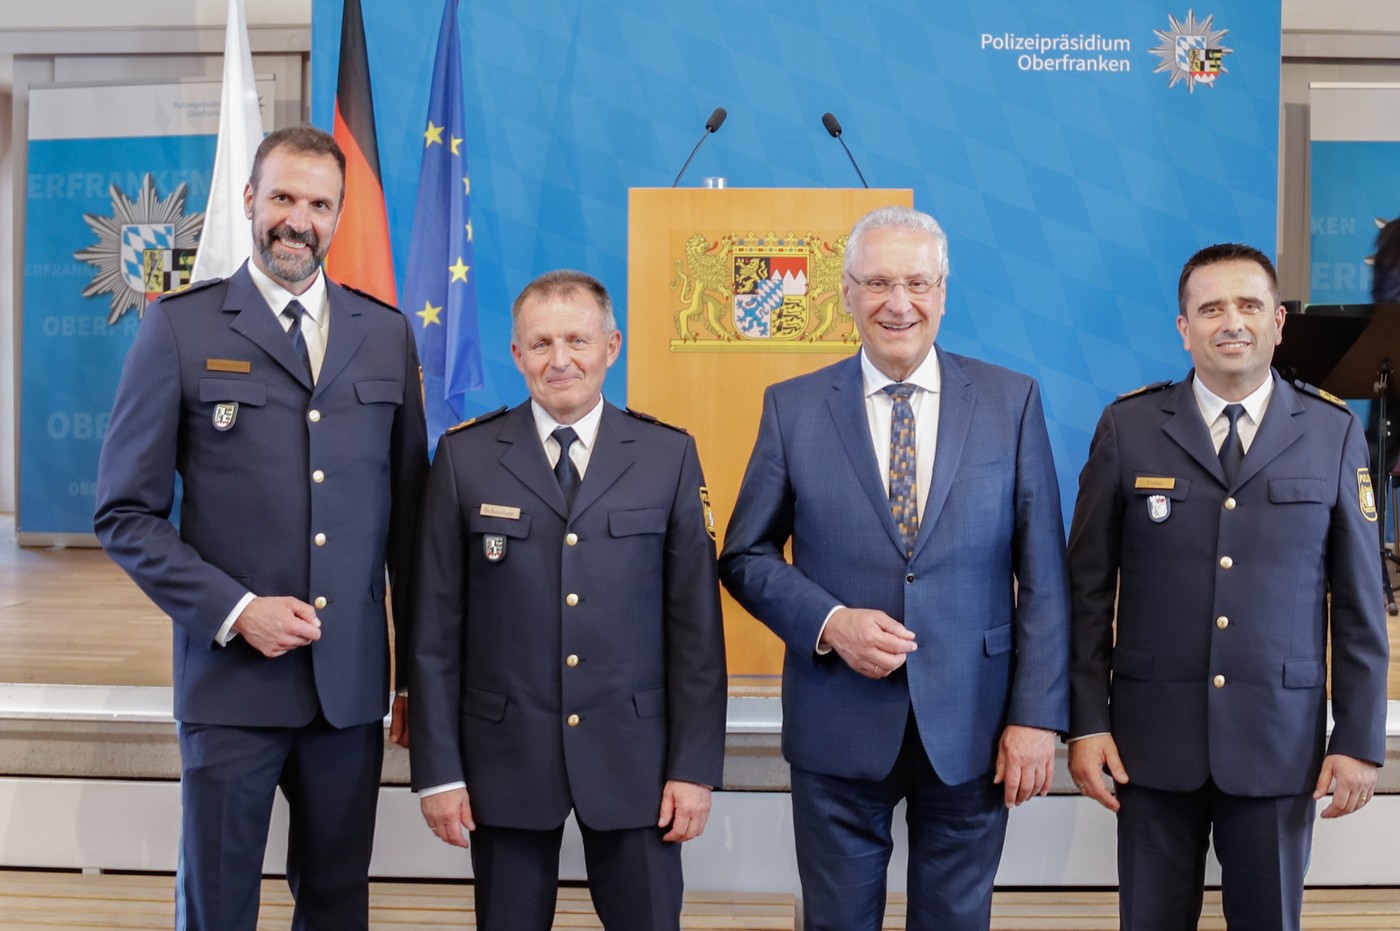 von links: Ulrich Rothdauscher, Armin Schmelzer, Joachim Herrmann, Markus Trebes